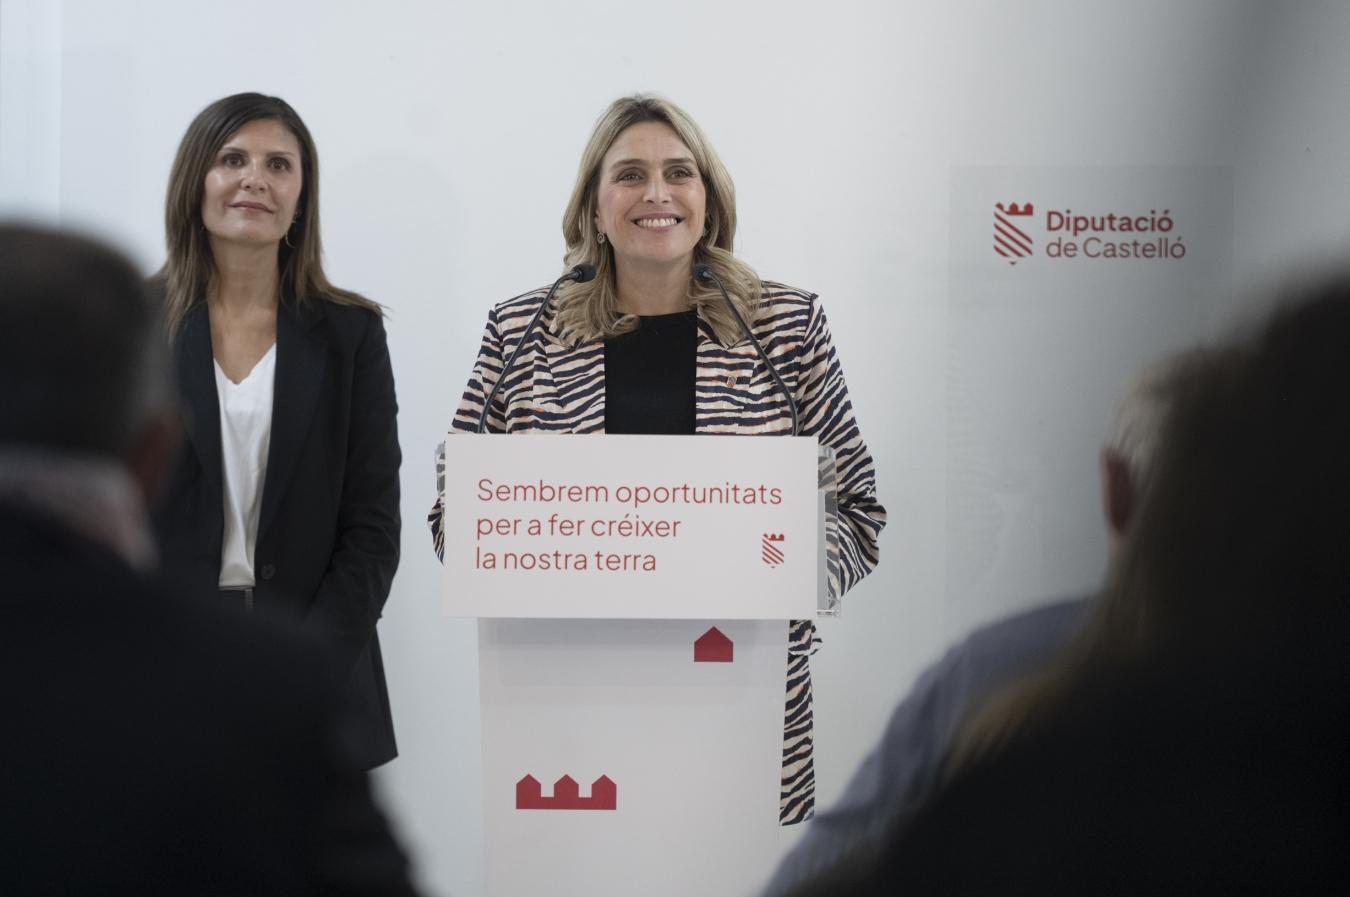 Marta Barrachina: “Este presupuesto es el inicio de un proyecto que continuará los próximos cuatro años y que conllevará progreso y oportunidades a todo nuestro territorio”